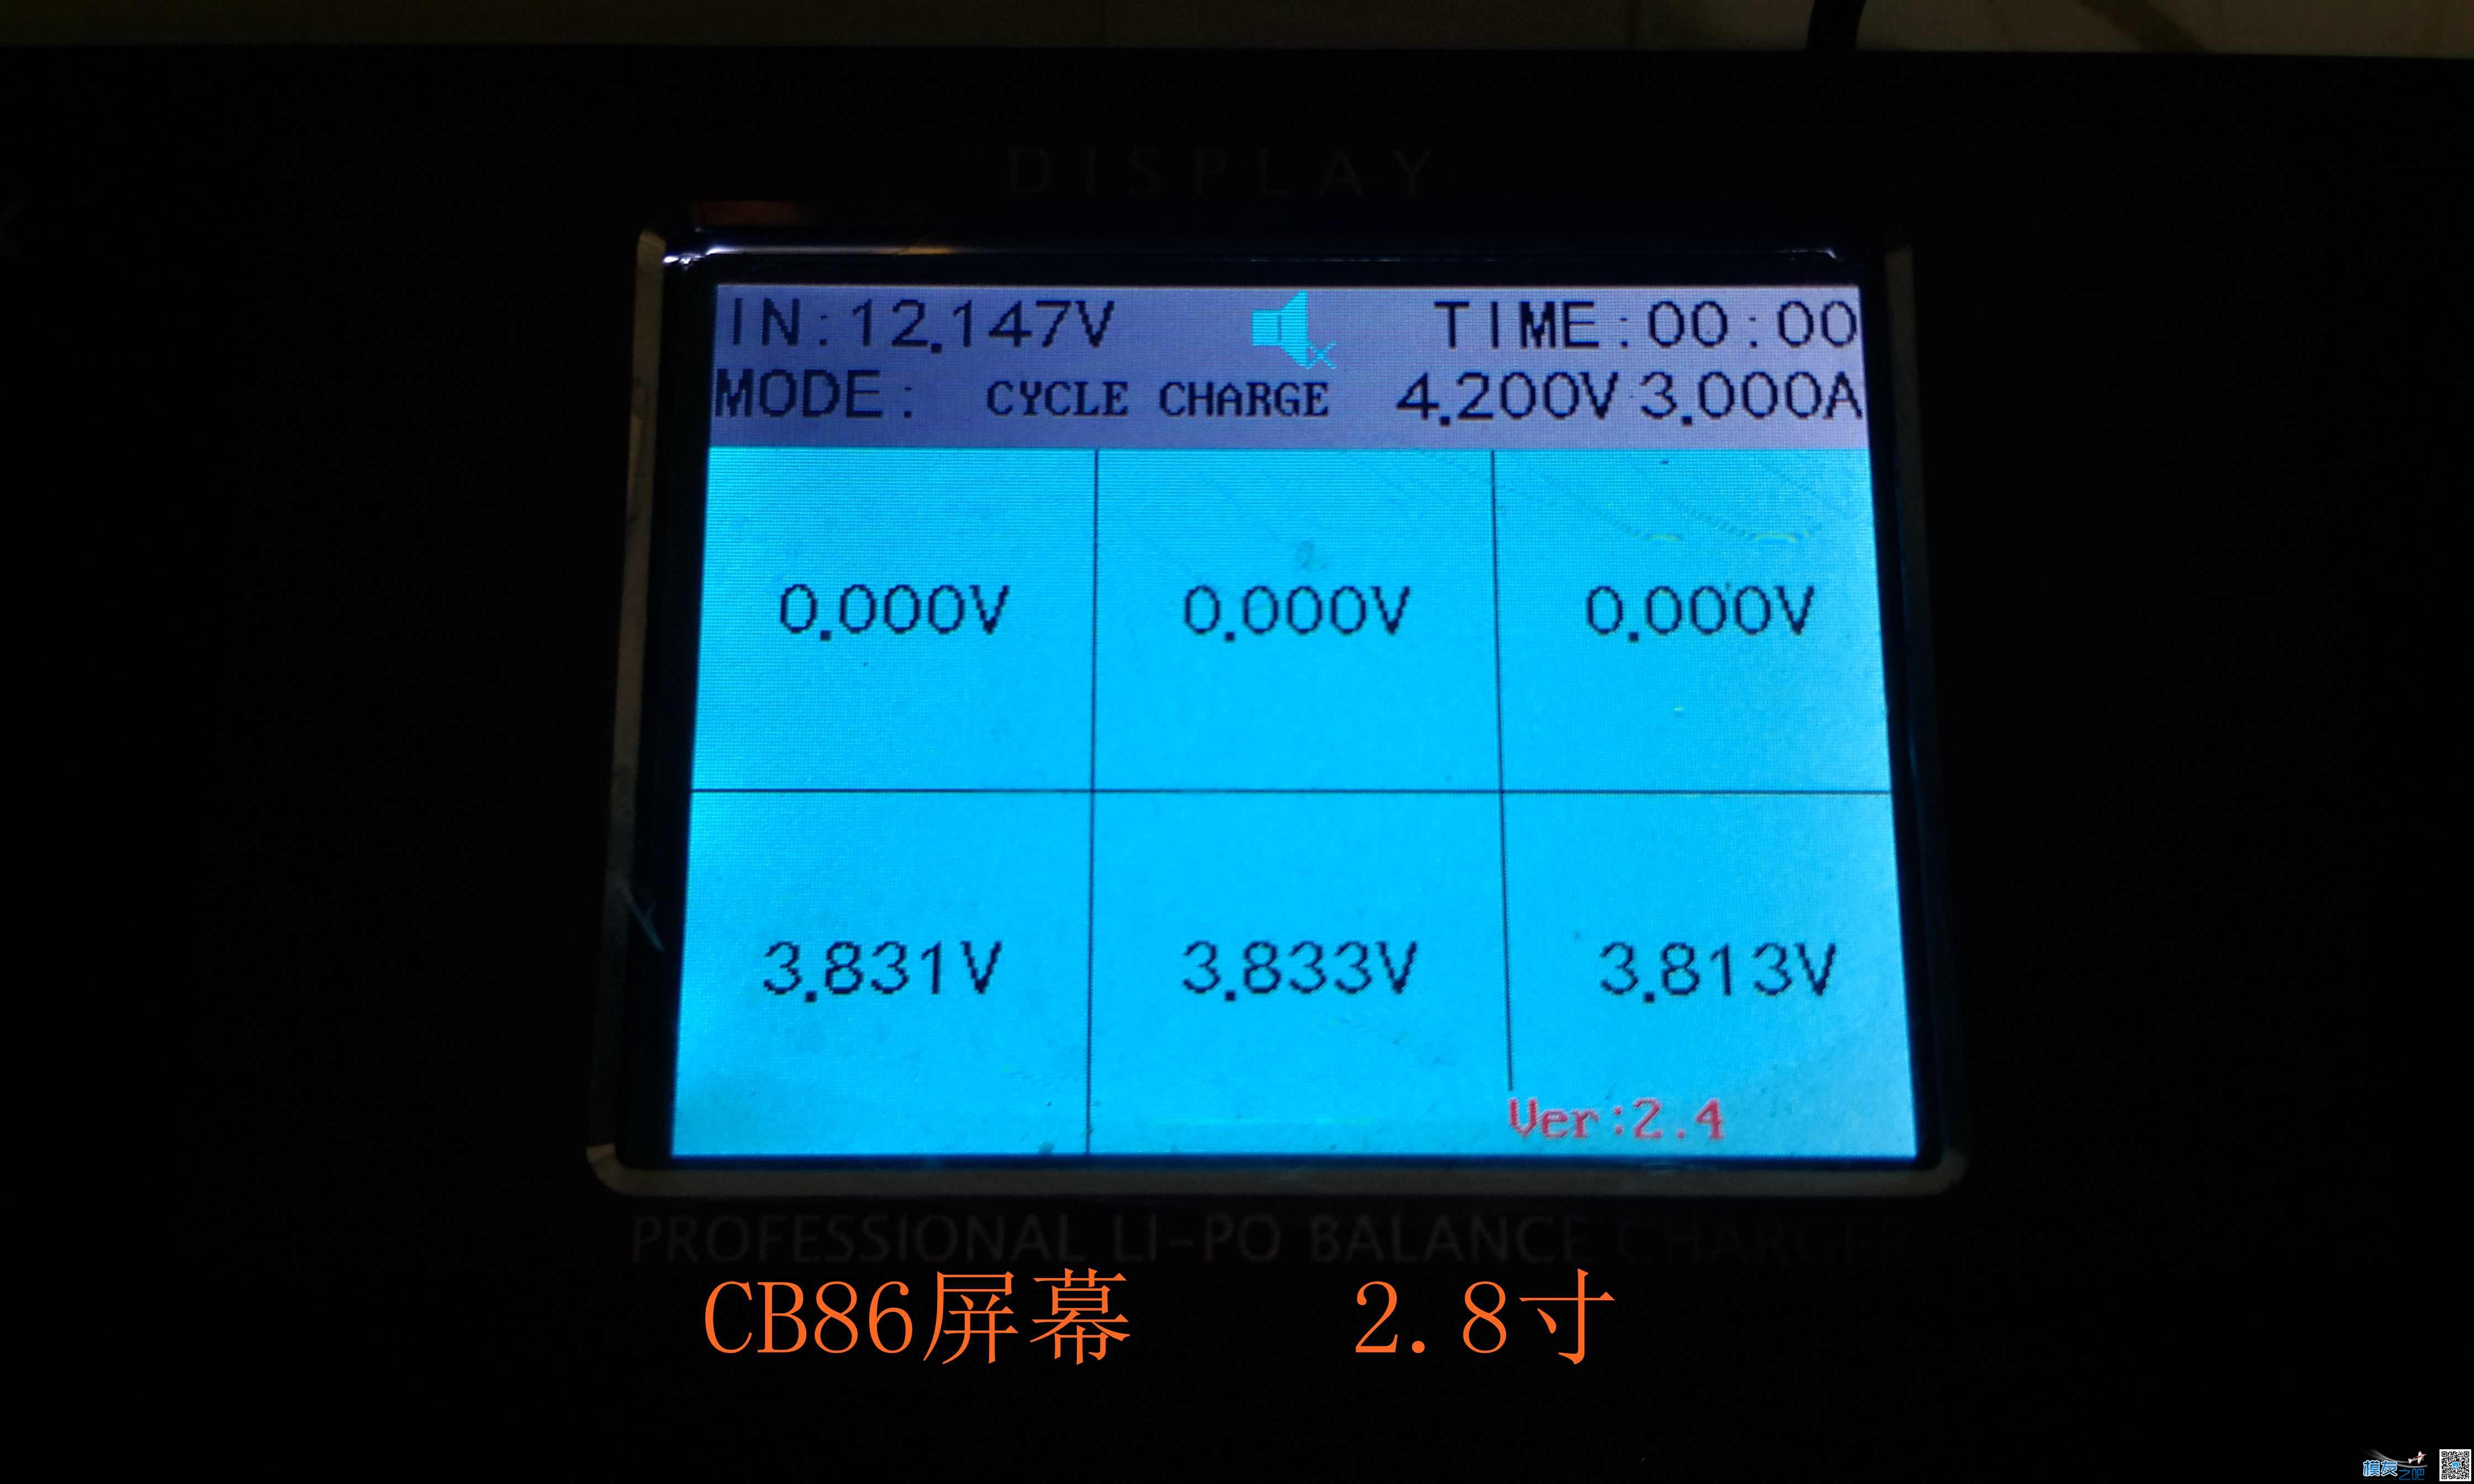 乐迪CP620开箱与CB86PLUS对比测试 电池,充电器,乐迪,固件,html 作者:455090630 9330 